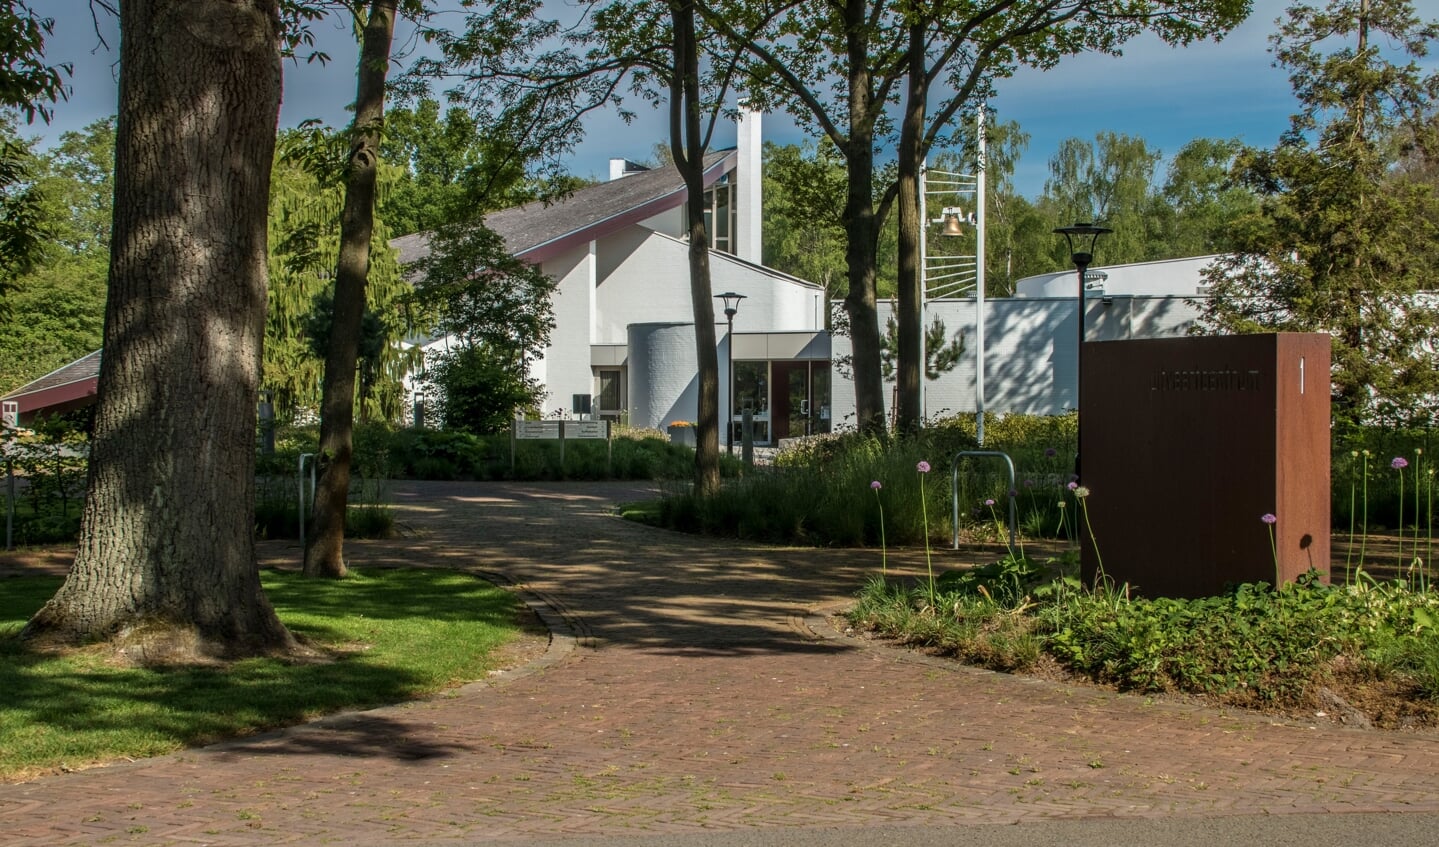 Stichting Uitvaartverzorging voor Nijverdal en Omstreken heeft renovatieplannen voor het zeer beeldbepalende dak van de aula van het uitvaartcentrum.